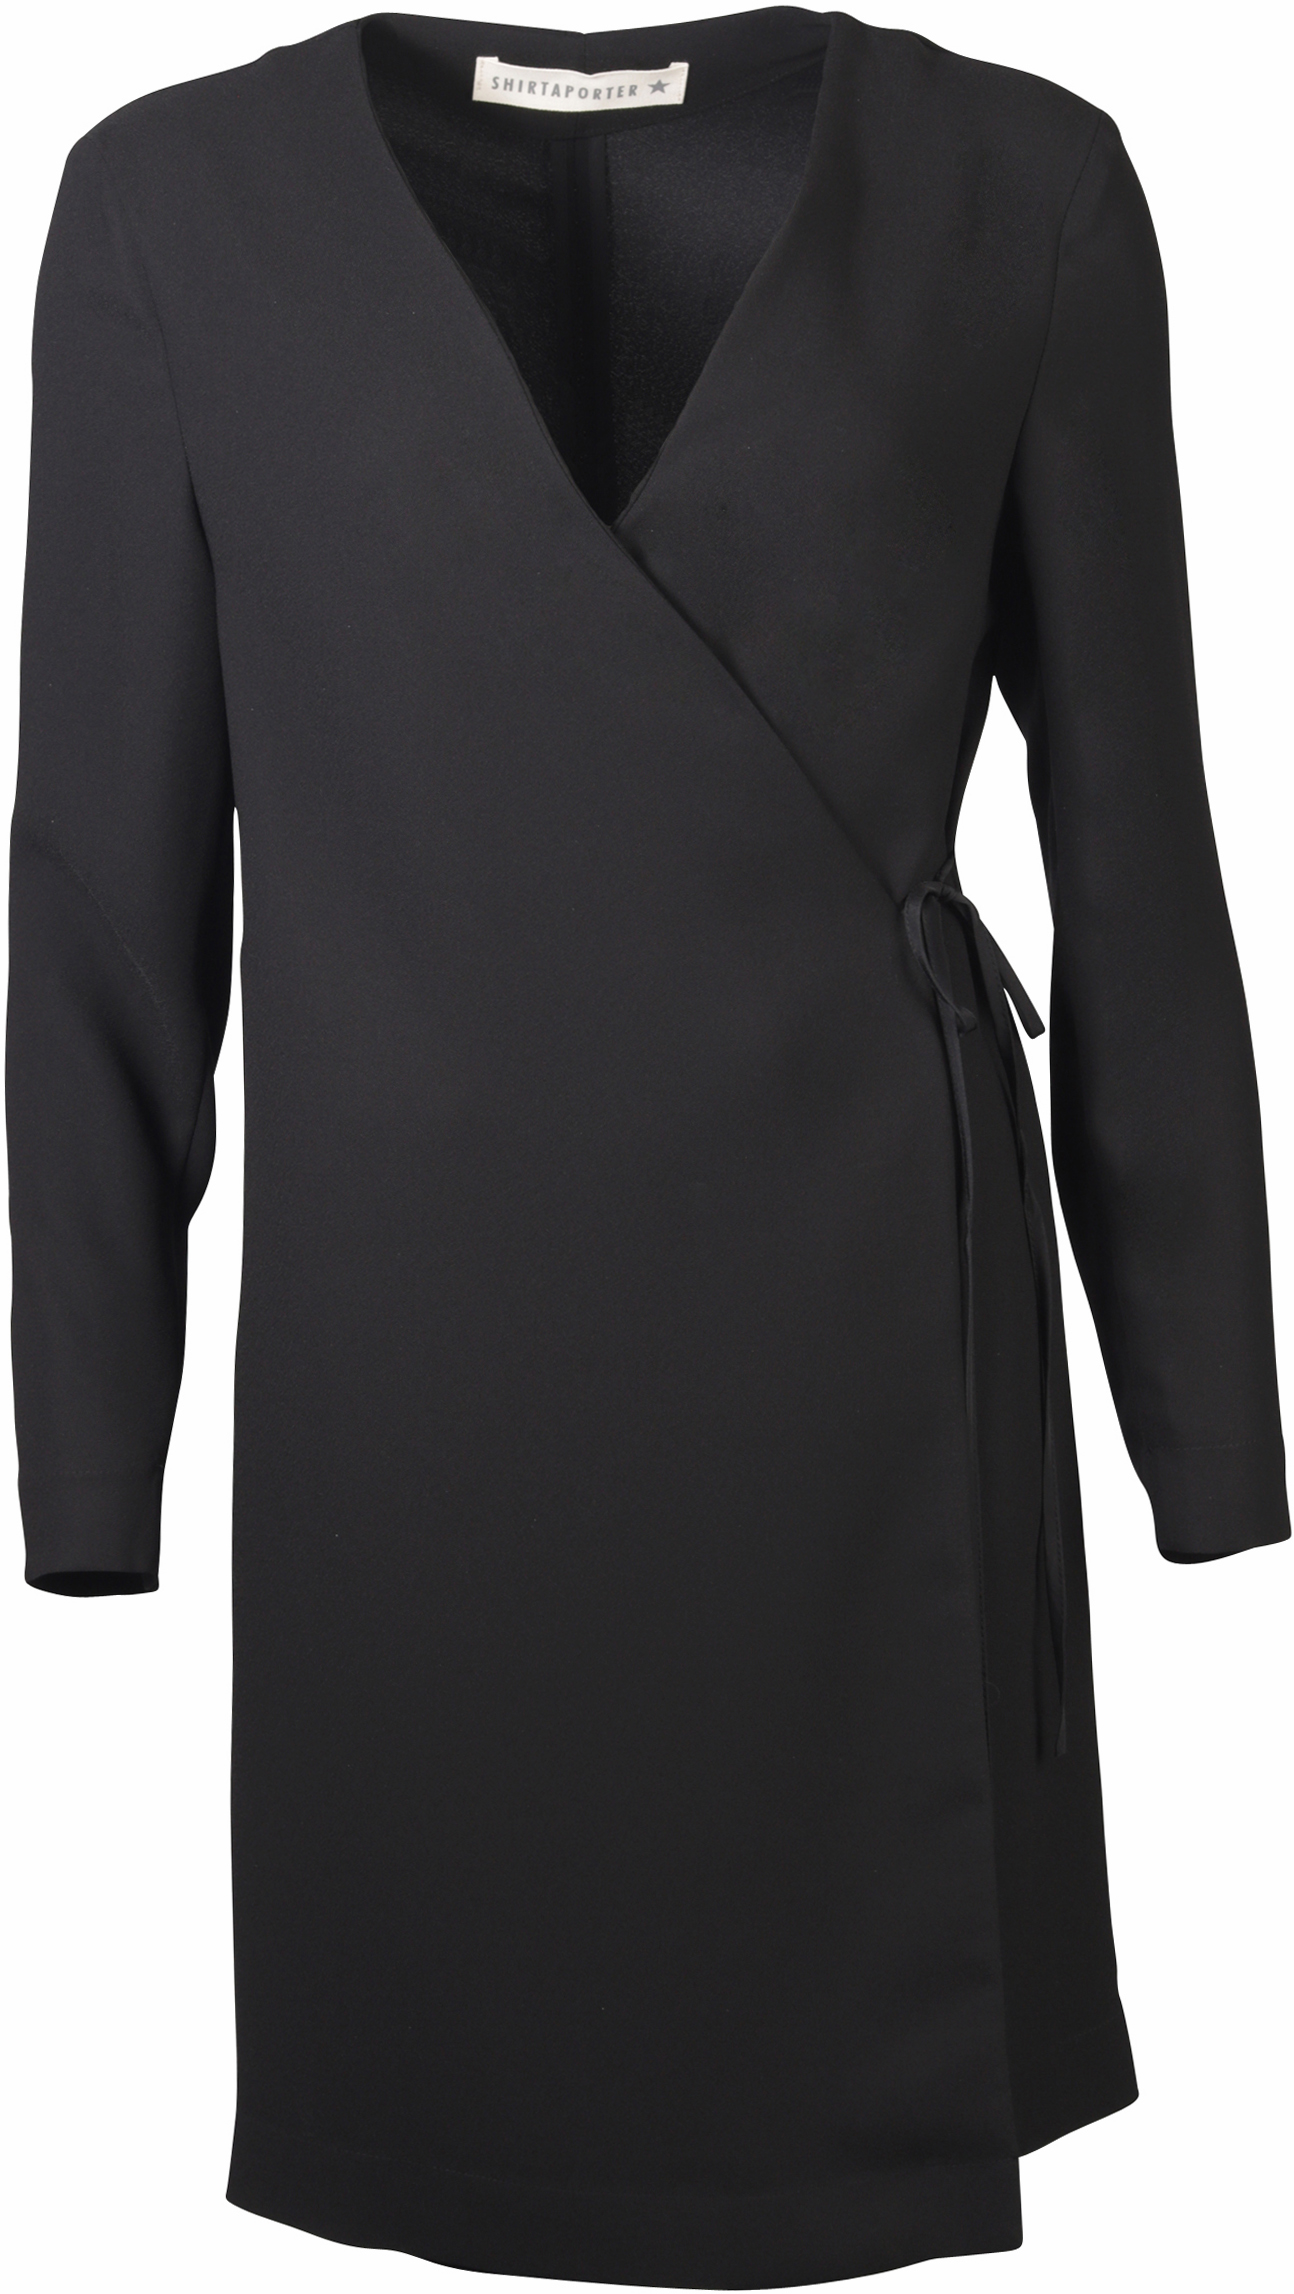 Shirtaporter Wickel Kleid schwarz